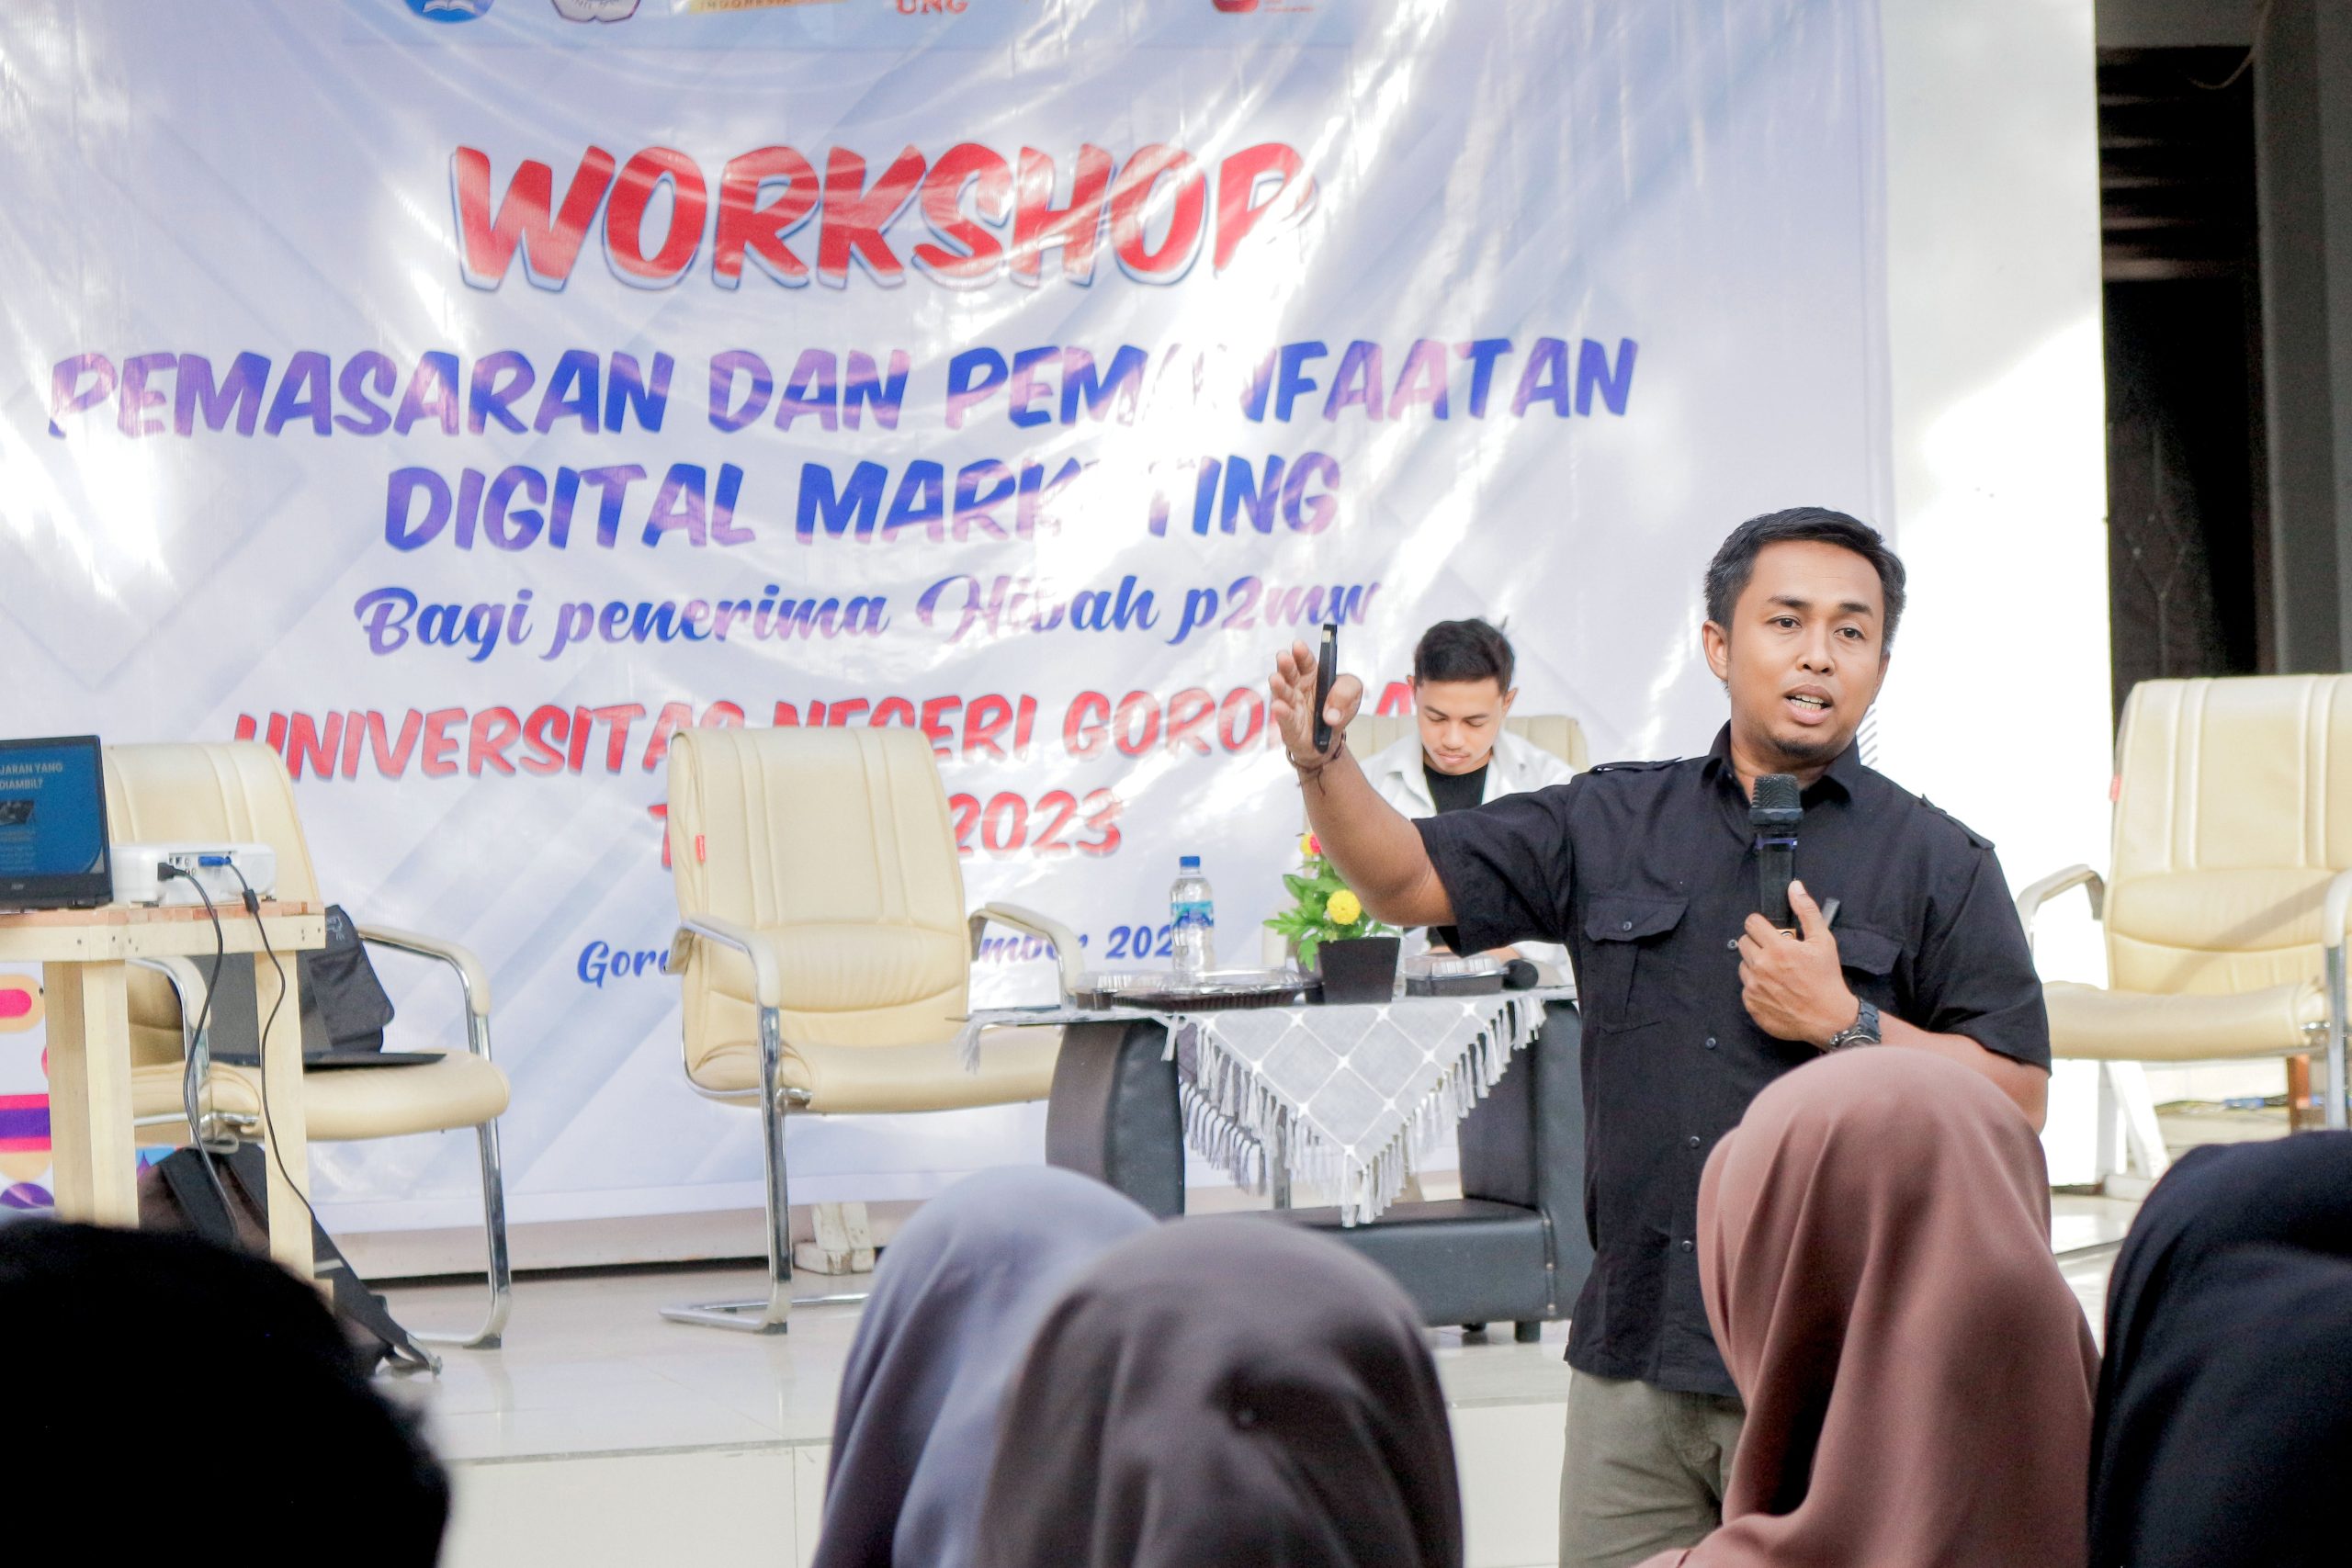 Workshop: Pemasaran dan Pemanfaatan Digital Marketing Bagi Mahasiswa P2MW Universitas Negeri Gorontalo